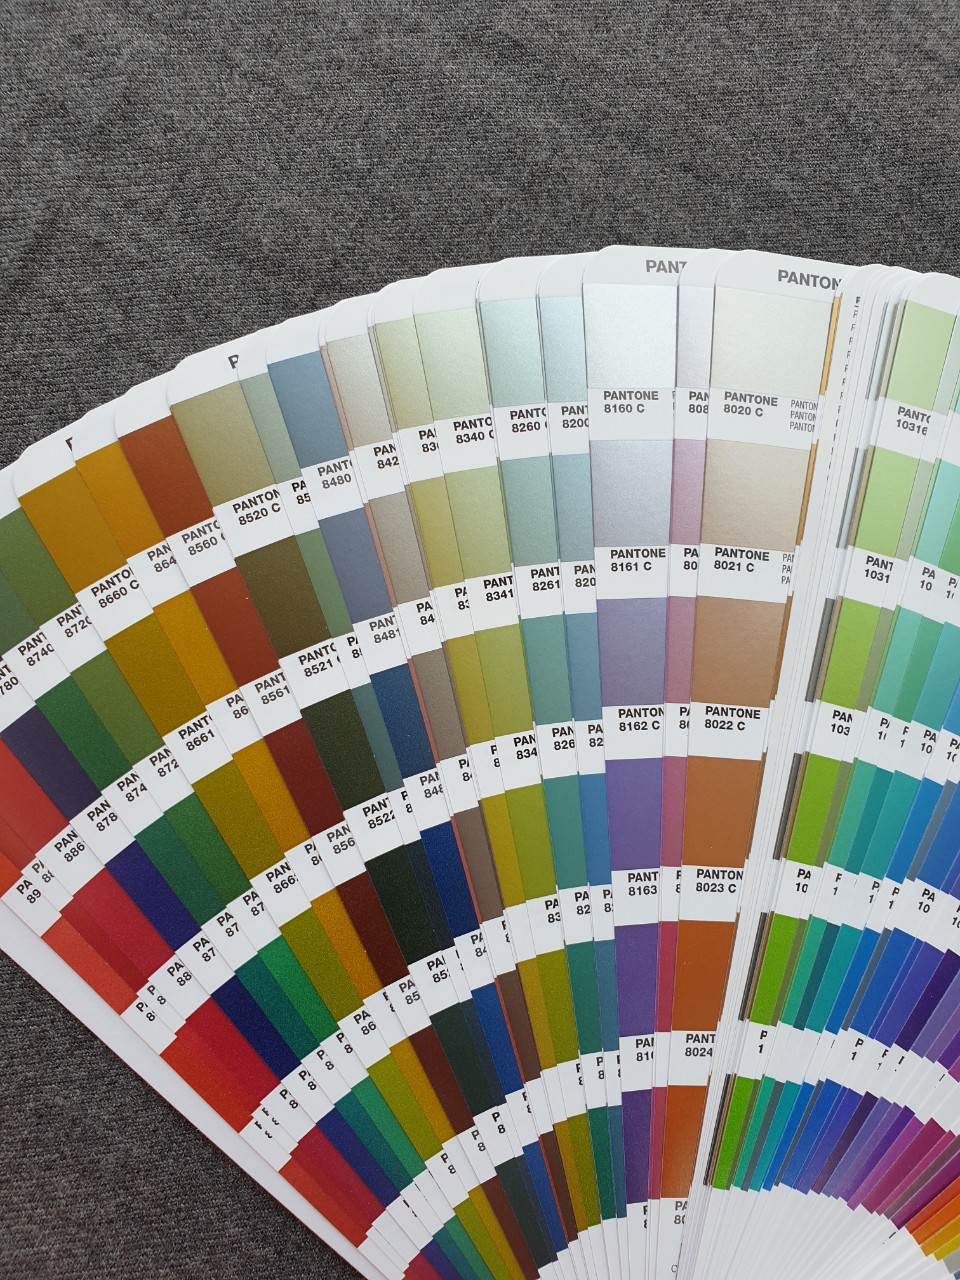 Bộ 1 thanh bảng màu Pantone C Metallics Guide GG1507A mới nhất năm 2020 - 655 màu pha PMS đầu 8 và 10 - có định lượng pha màu theo % - Ngành đồ họa in ấn - Nhập khẩu từ nhà máy PANTONE LLC tại Mỹ